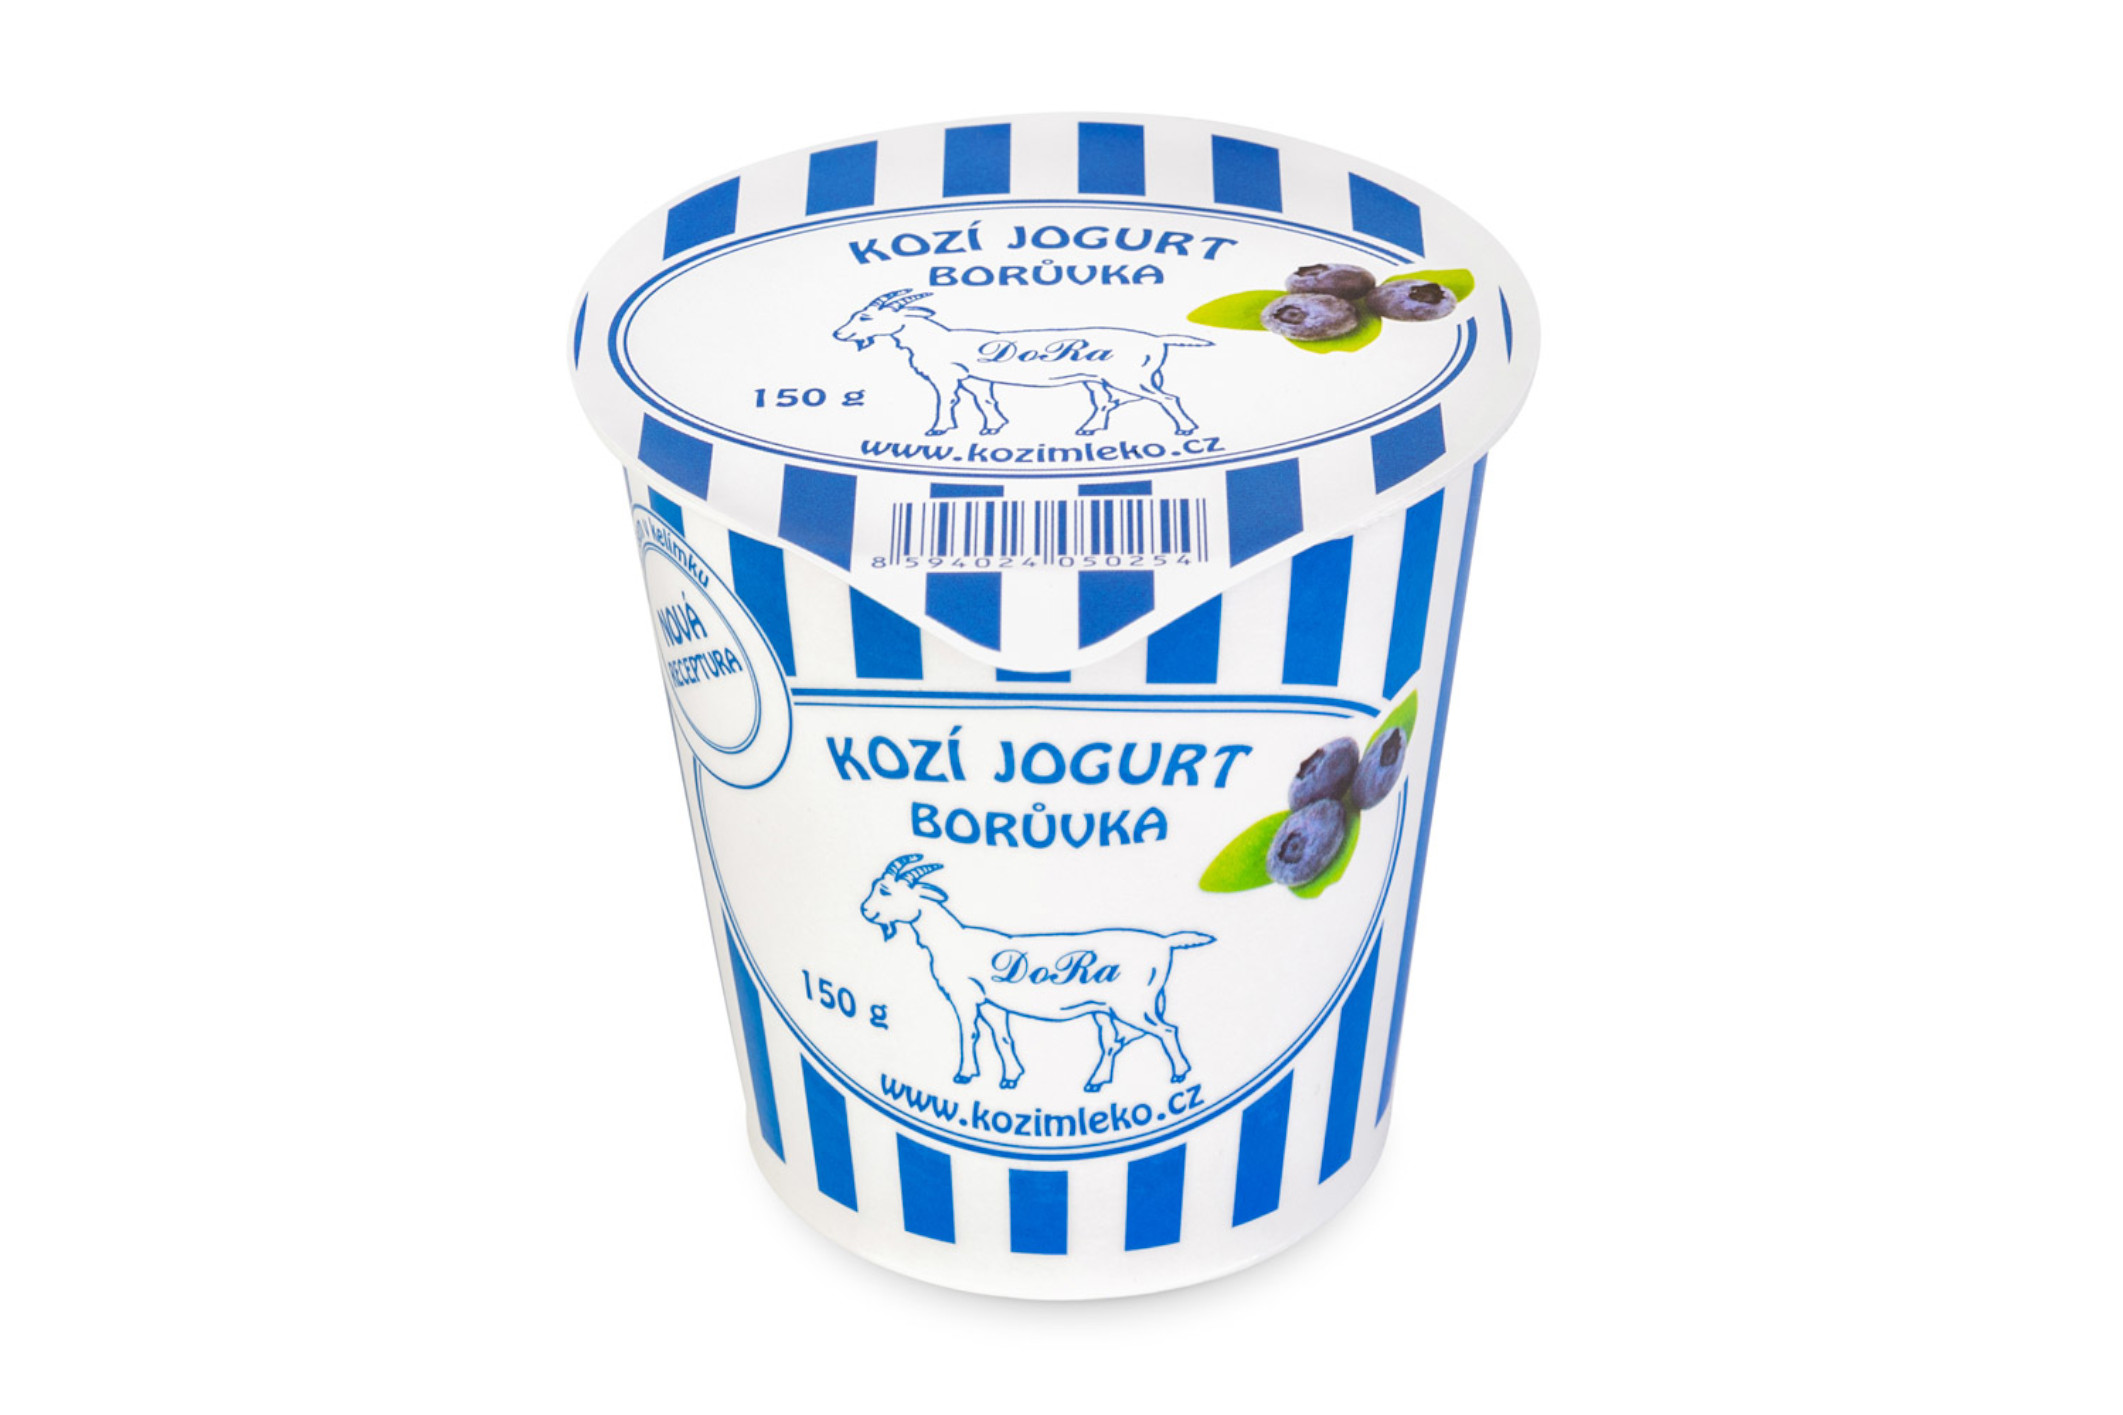 Kozí jogurt borůvka 150 g - pouze rozvoz vybraná města nebo osobní odběr